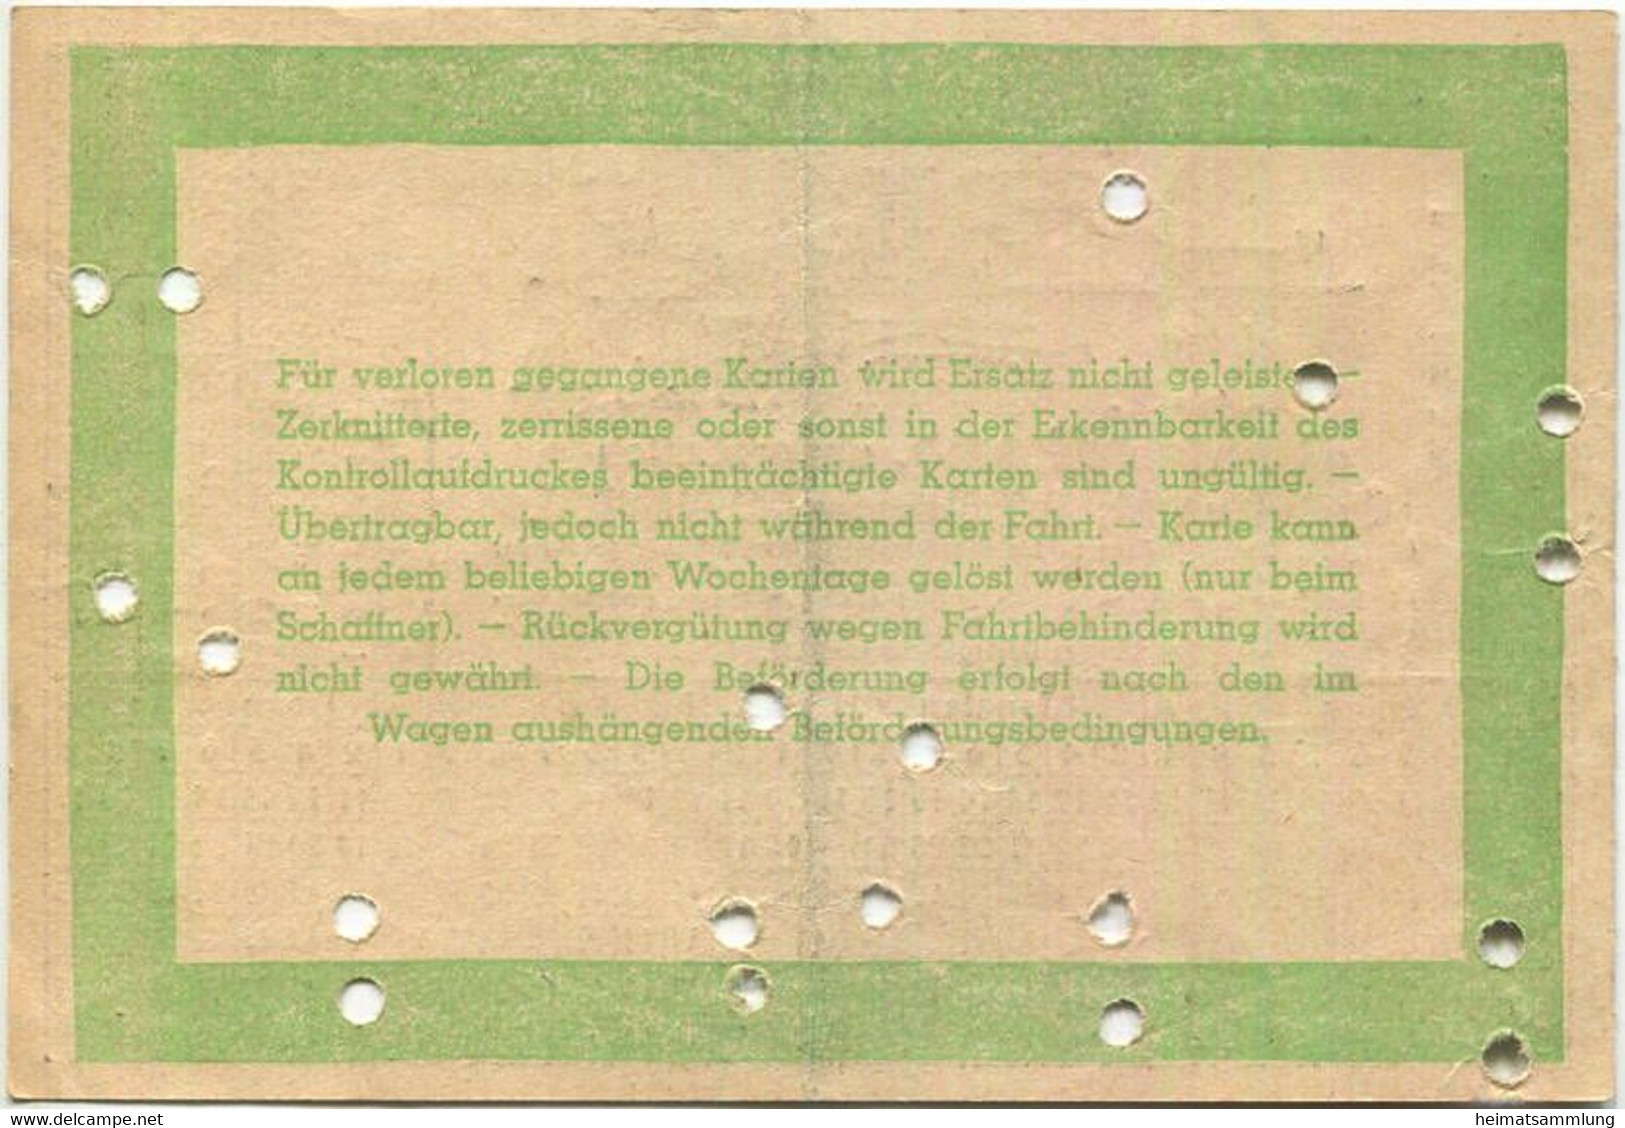 Deutschland - Stadtwerke Potsdam - Abt. Strassenbahn - Wochenkarte - Preis Für 1 Bis 2 Teilstrecken 0.90 RM 1938 - Fahrk - Europa